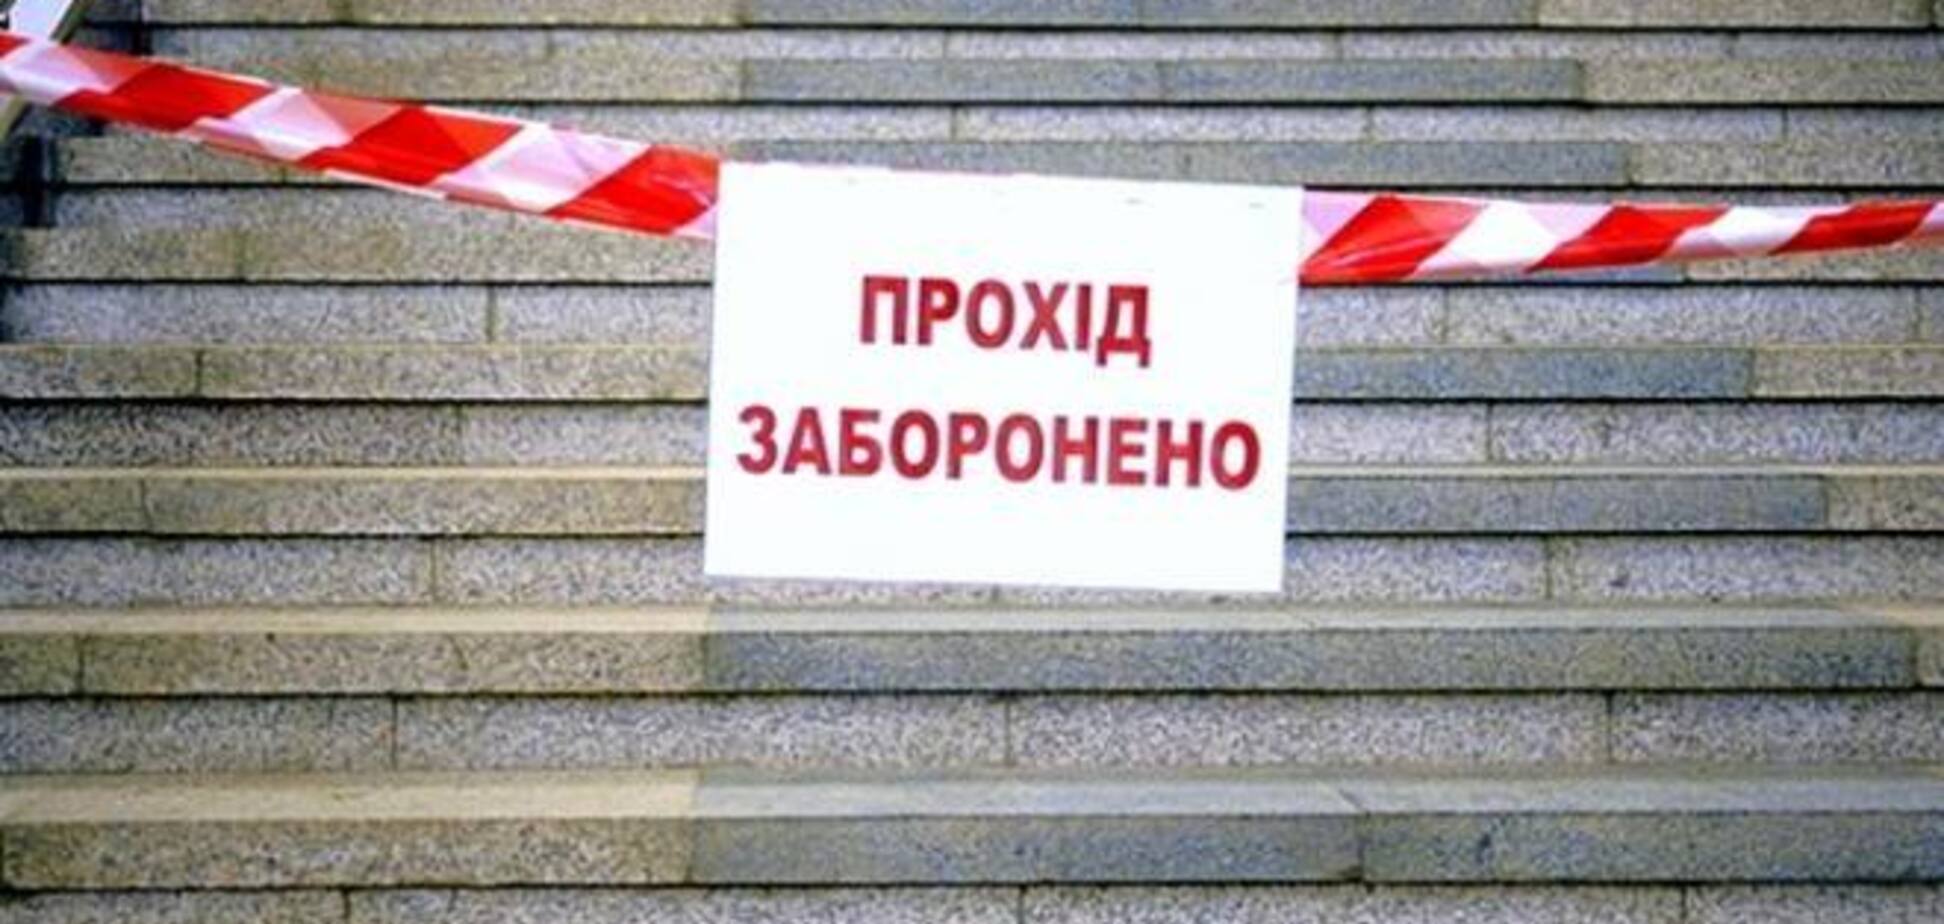 В Киеве из-за беспорядков закрыли все станции метро - СМИ